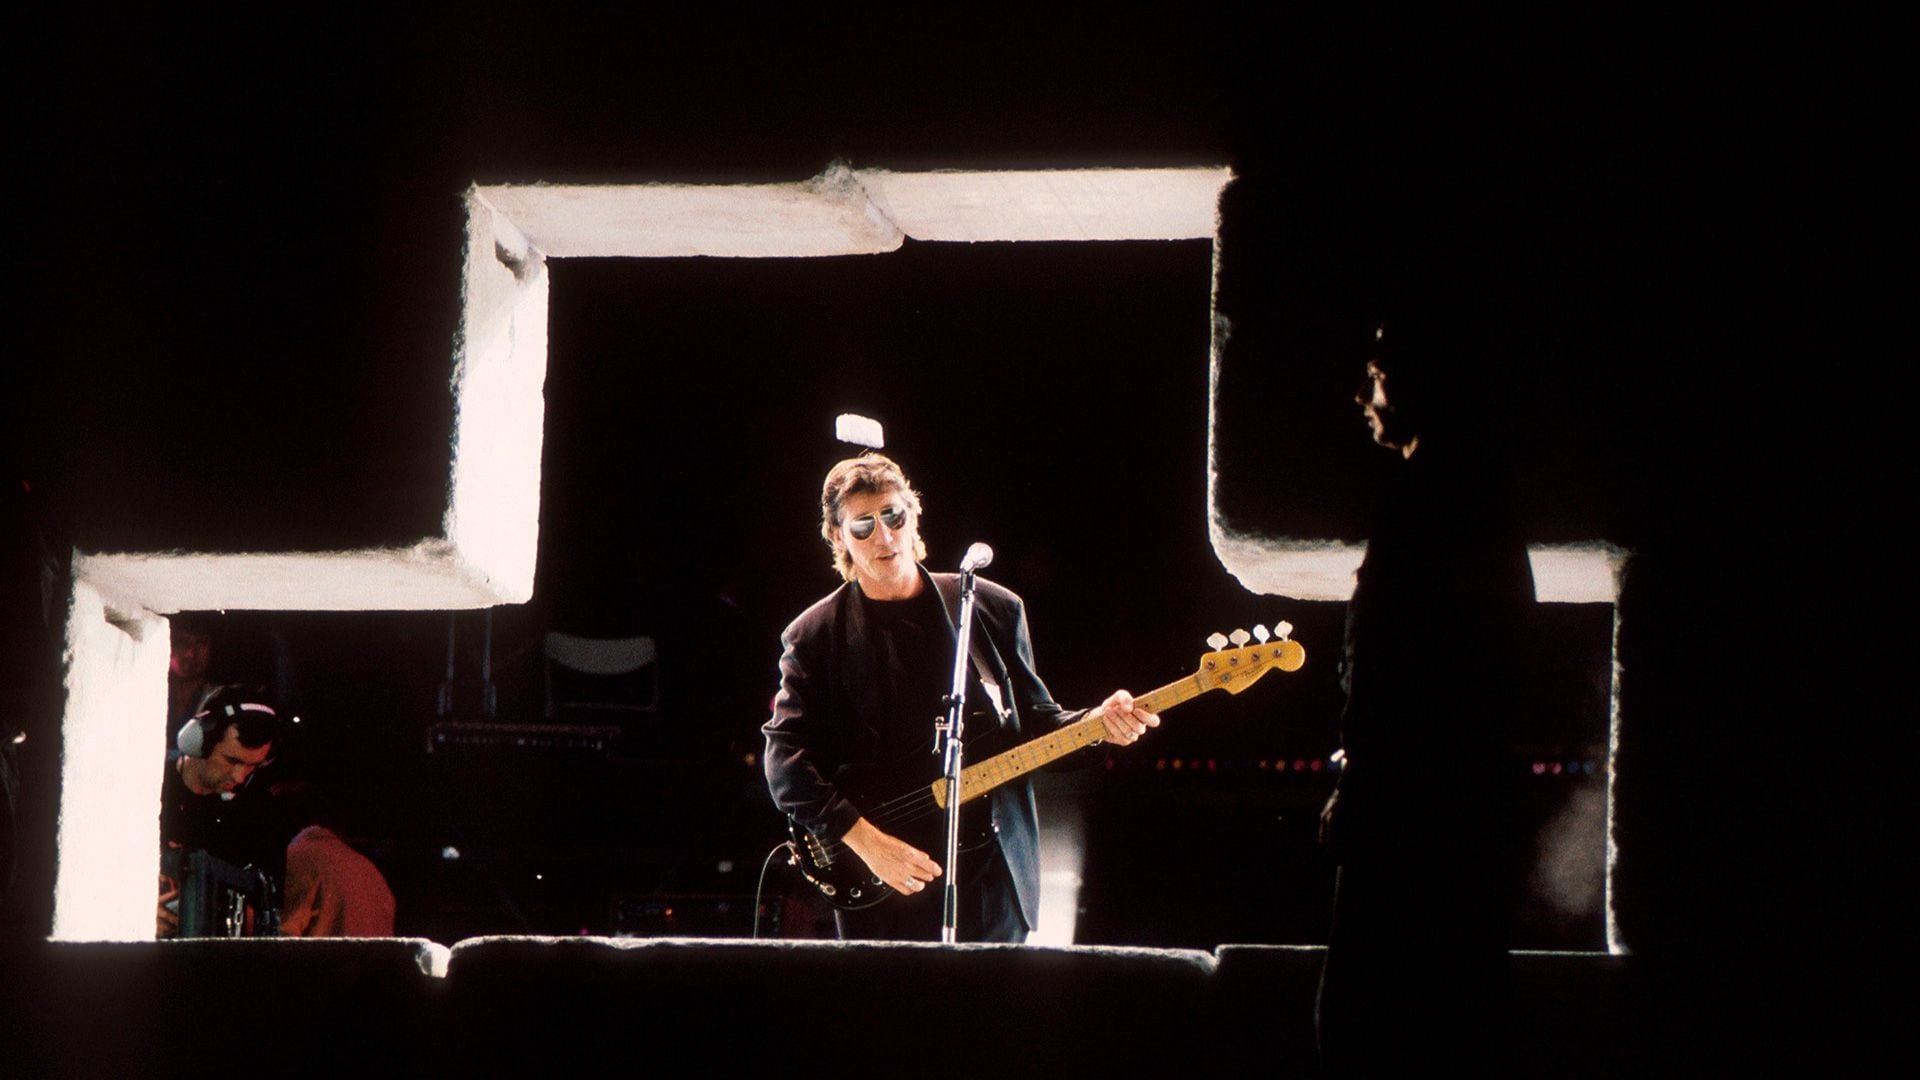 Roger Waters durante el concierto del 21 de julio de 1990 en Berlín. Pasaron 33 años de uno de los shows más emblemáticos de la historia moderna (Michael Putland/Getty Images)